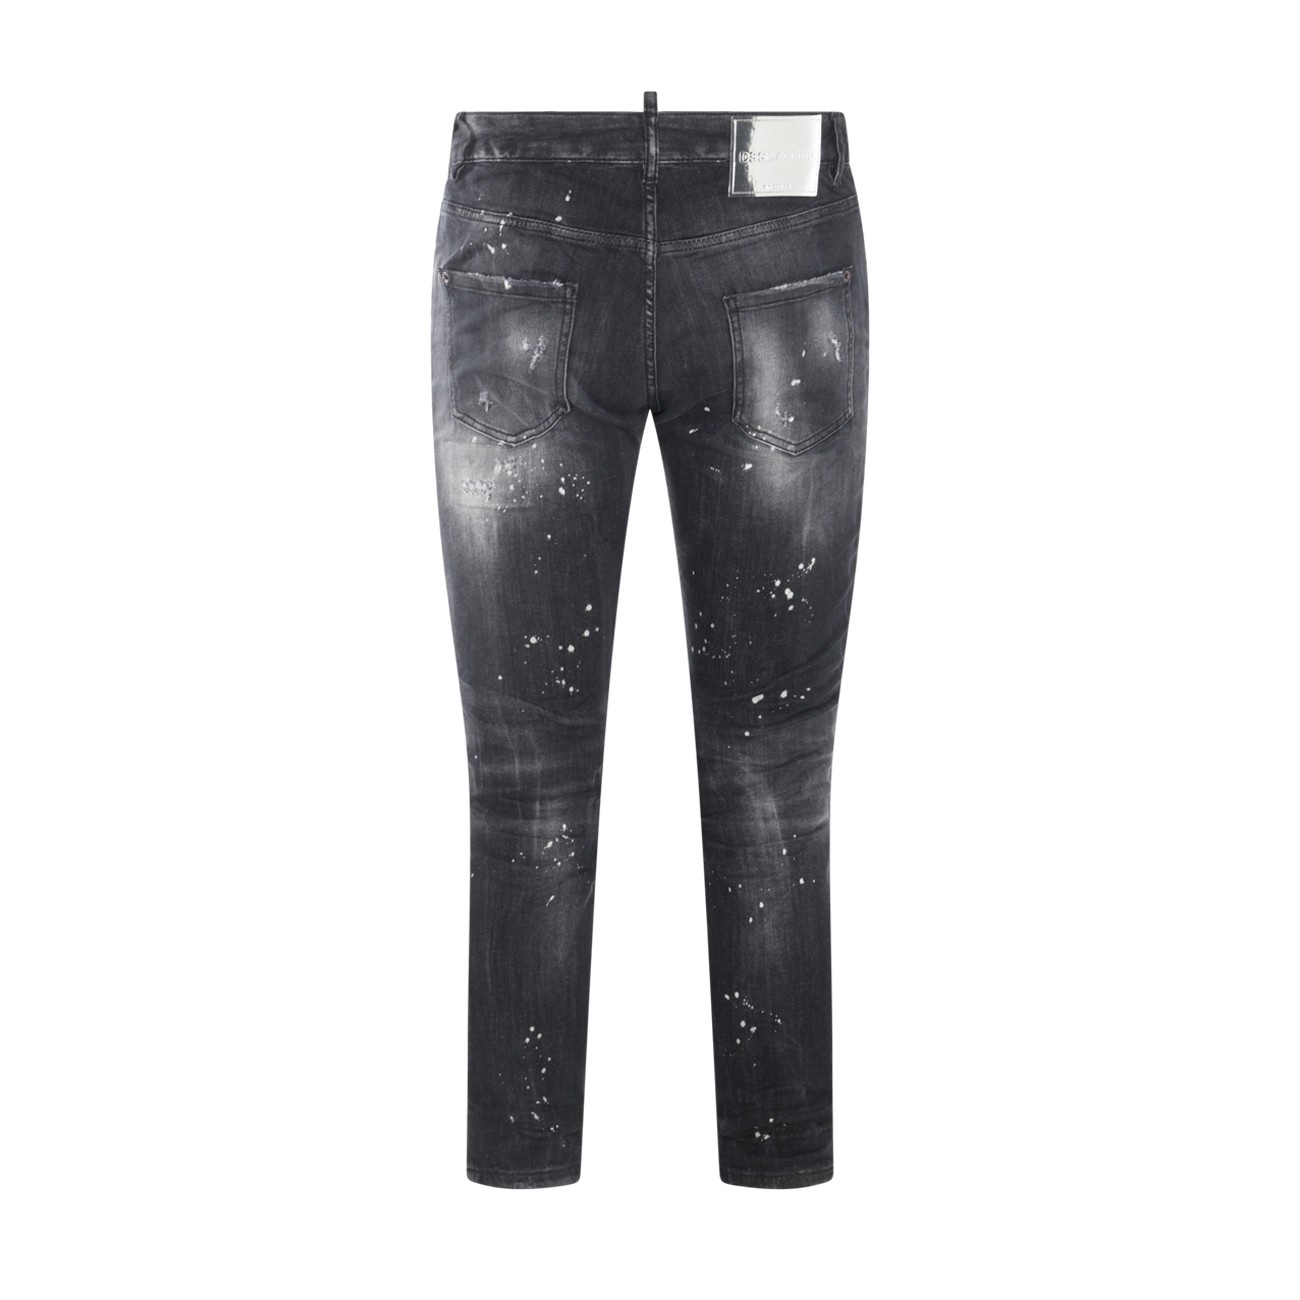 black cotton denim jeans - 2